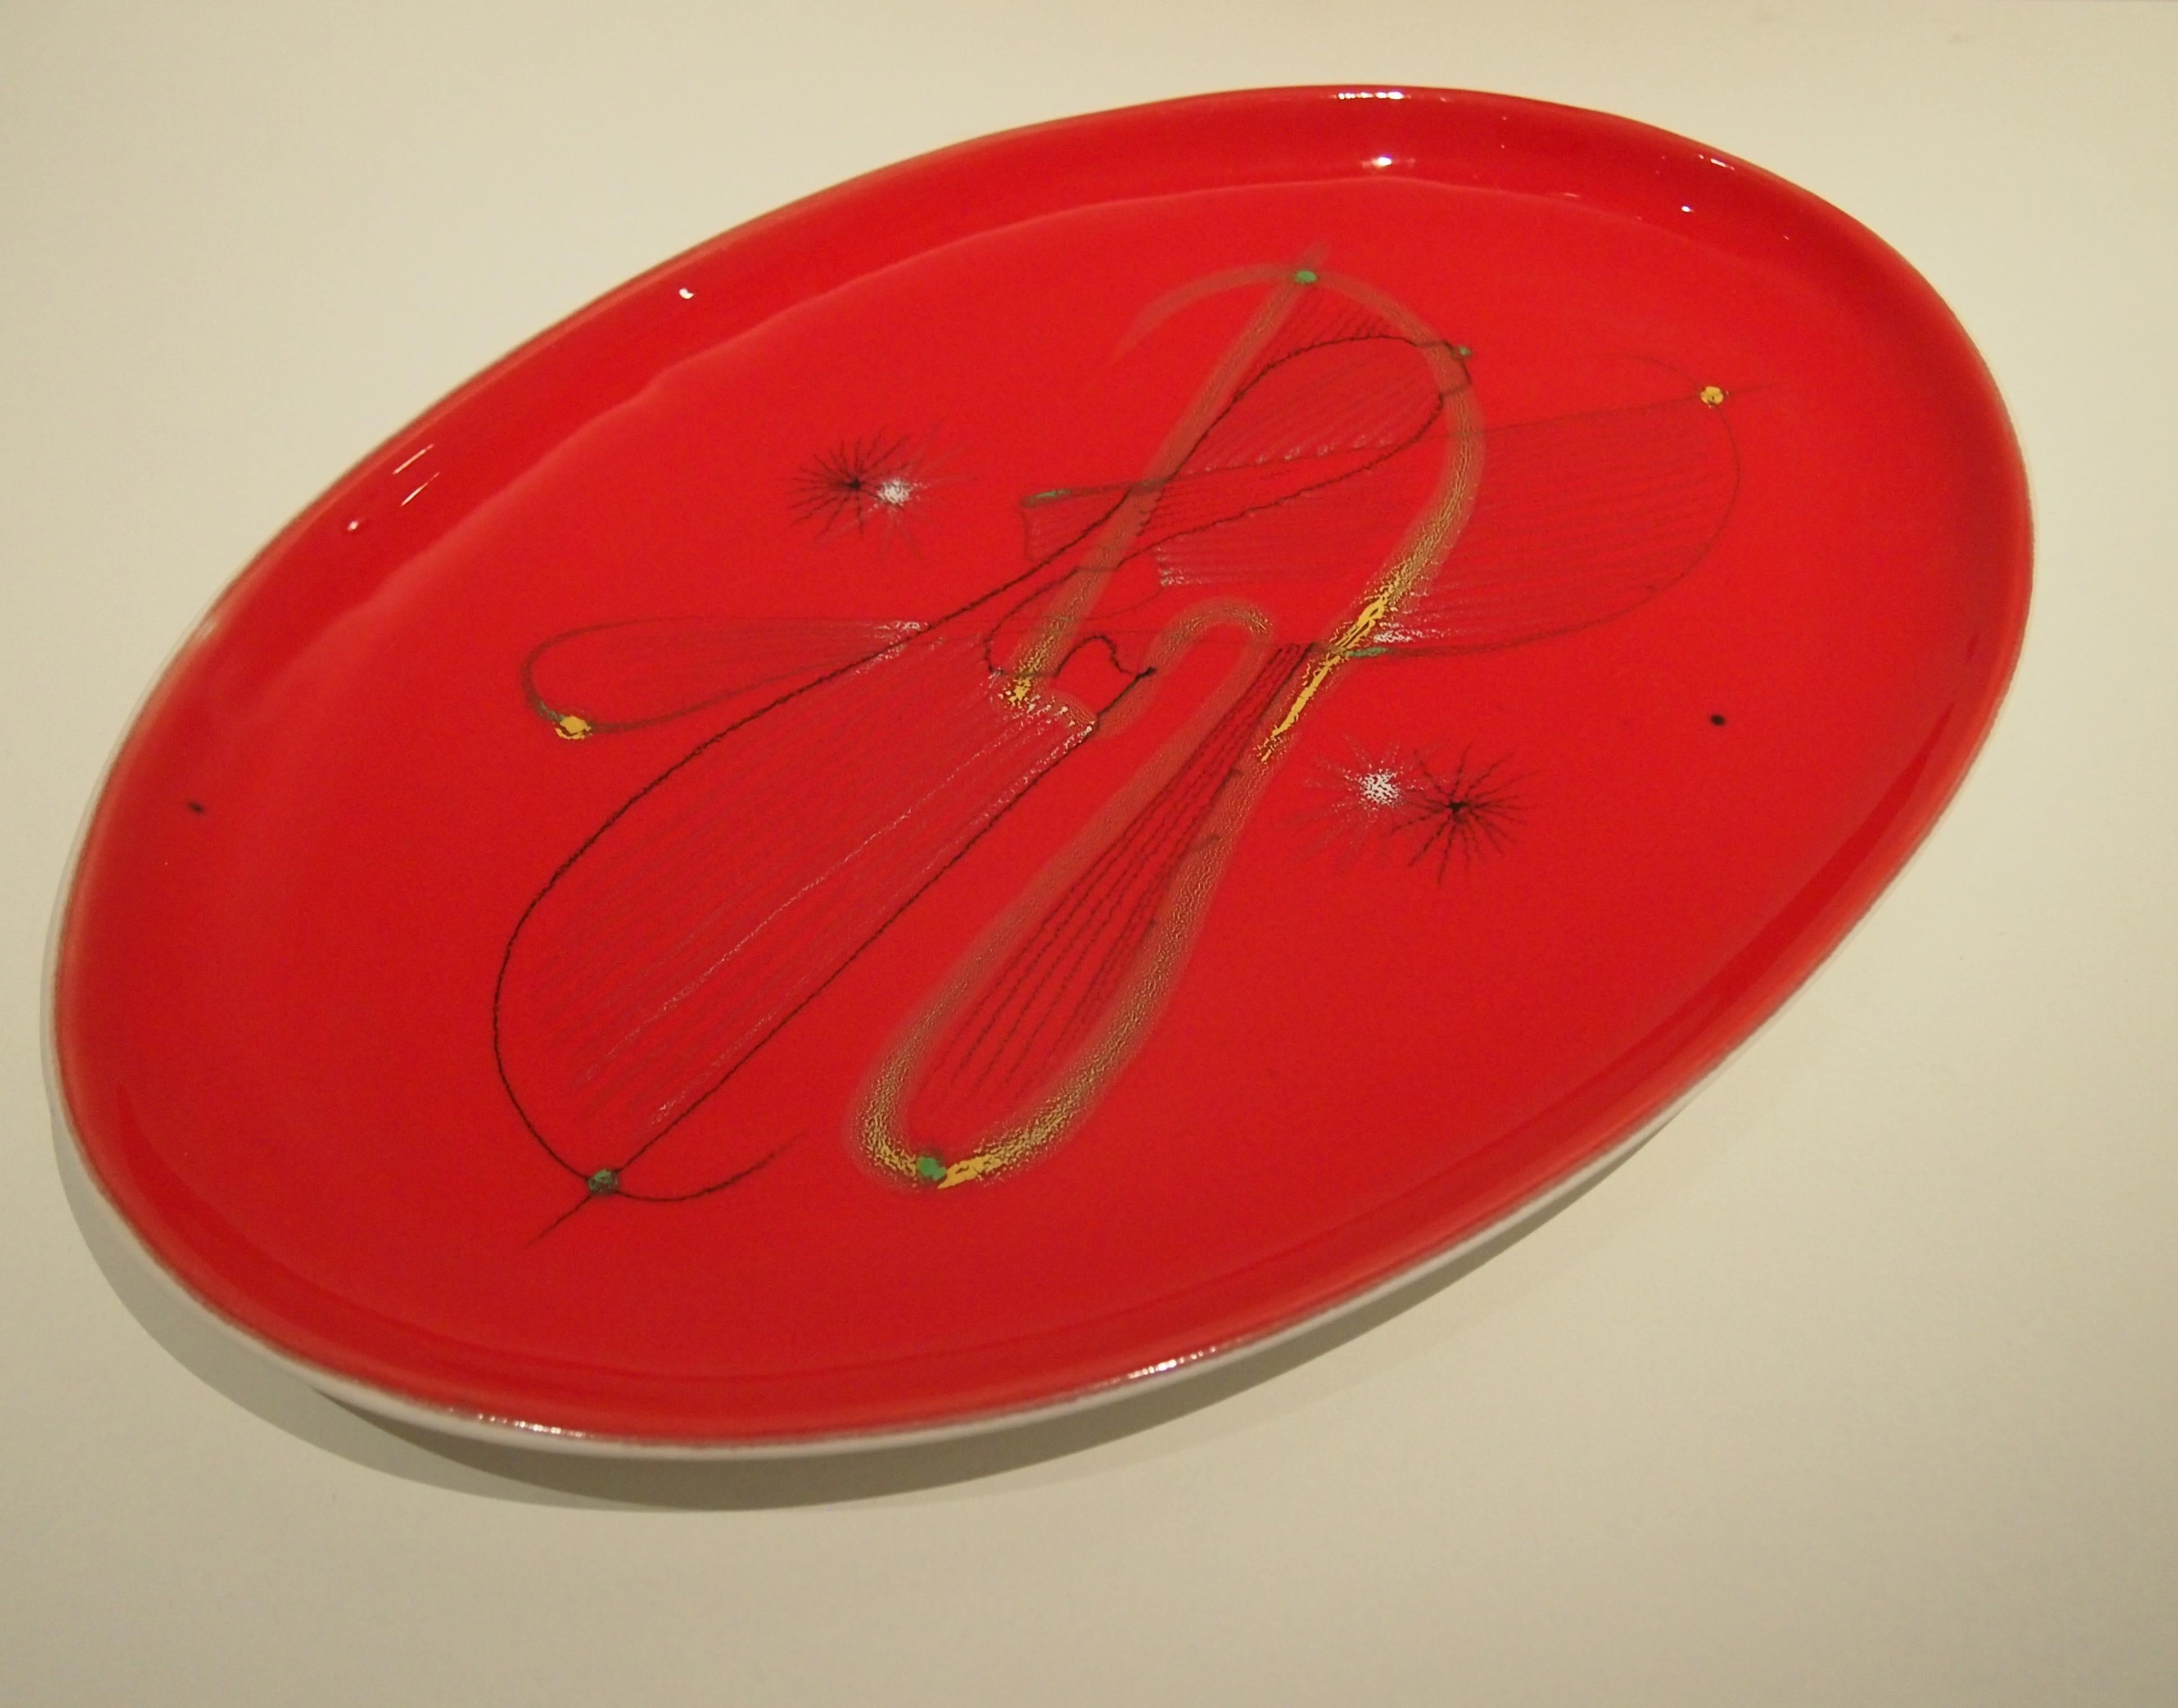 Plat émaillé rouge brillant signé du cachet d'Andre Vallauris
1950s.